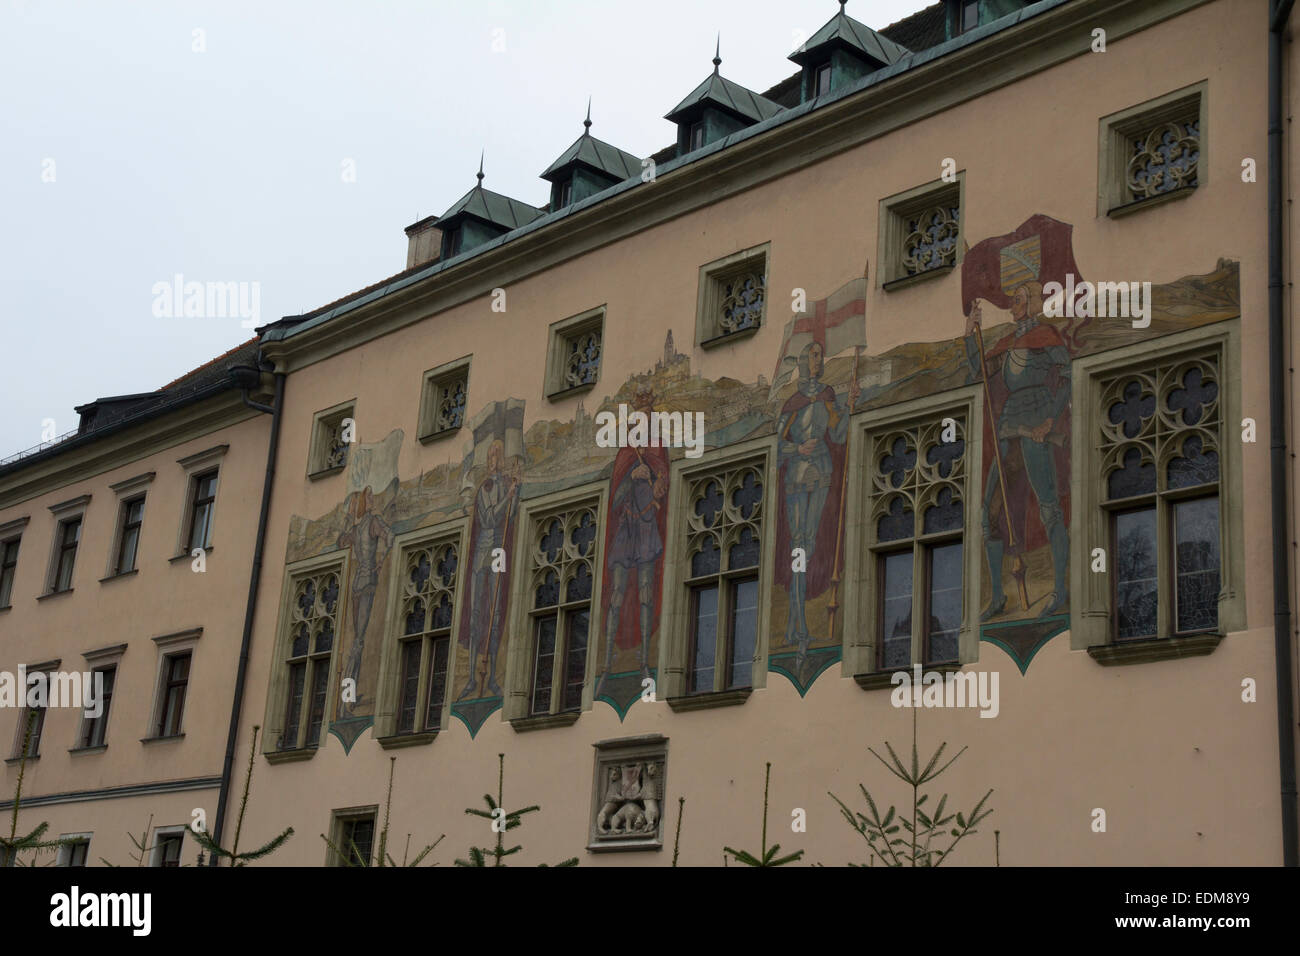 De style gothique de Passau Altes Rathaus (Ancien hôtel de ville) dates pour 1298 et dispose d'une fresque rappelant le passé de la ville médiévale Banque D'Images